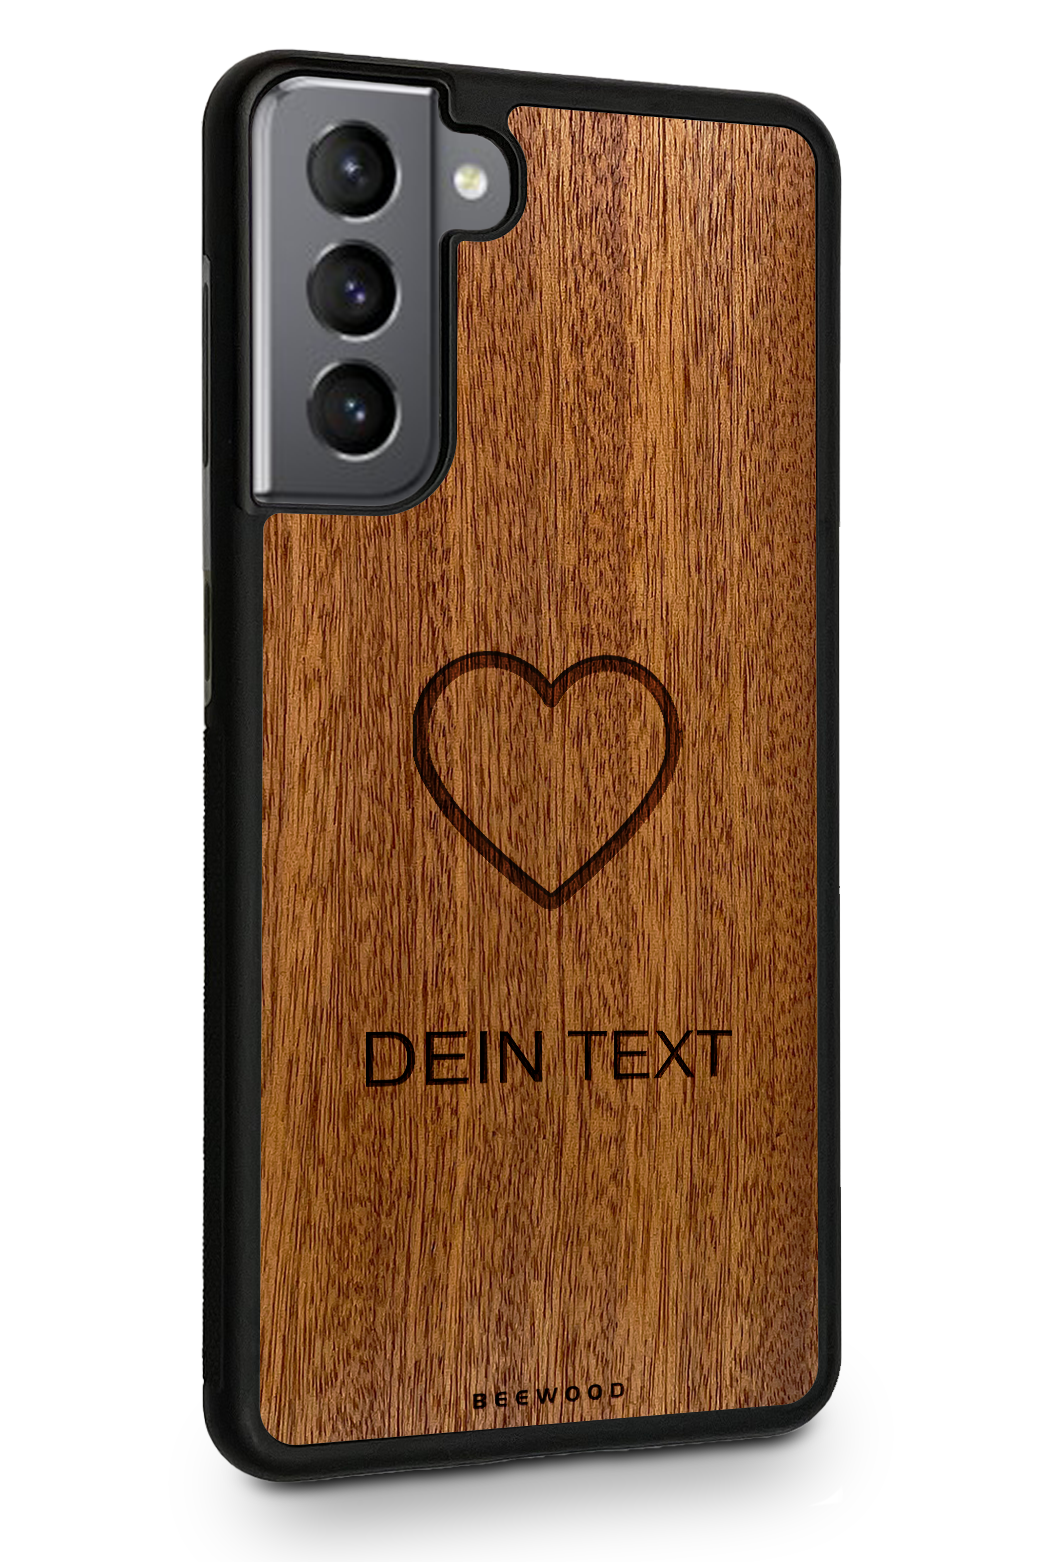 Holzhülle Samsung - BeeWood LOVE - MIT DEINEM TEXT